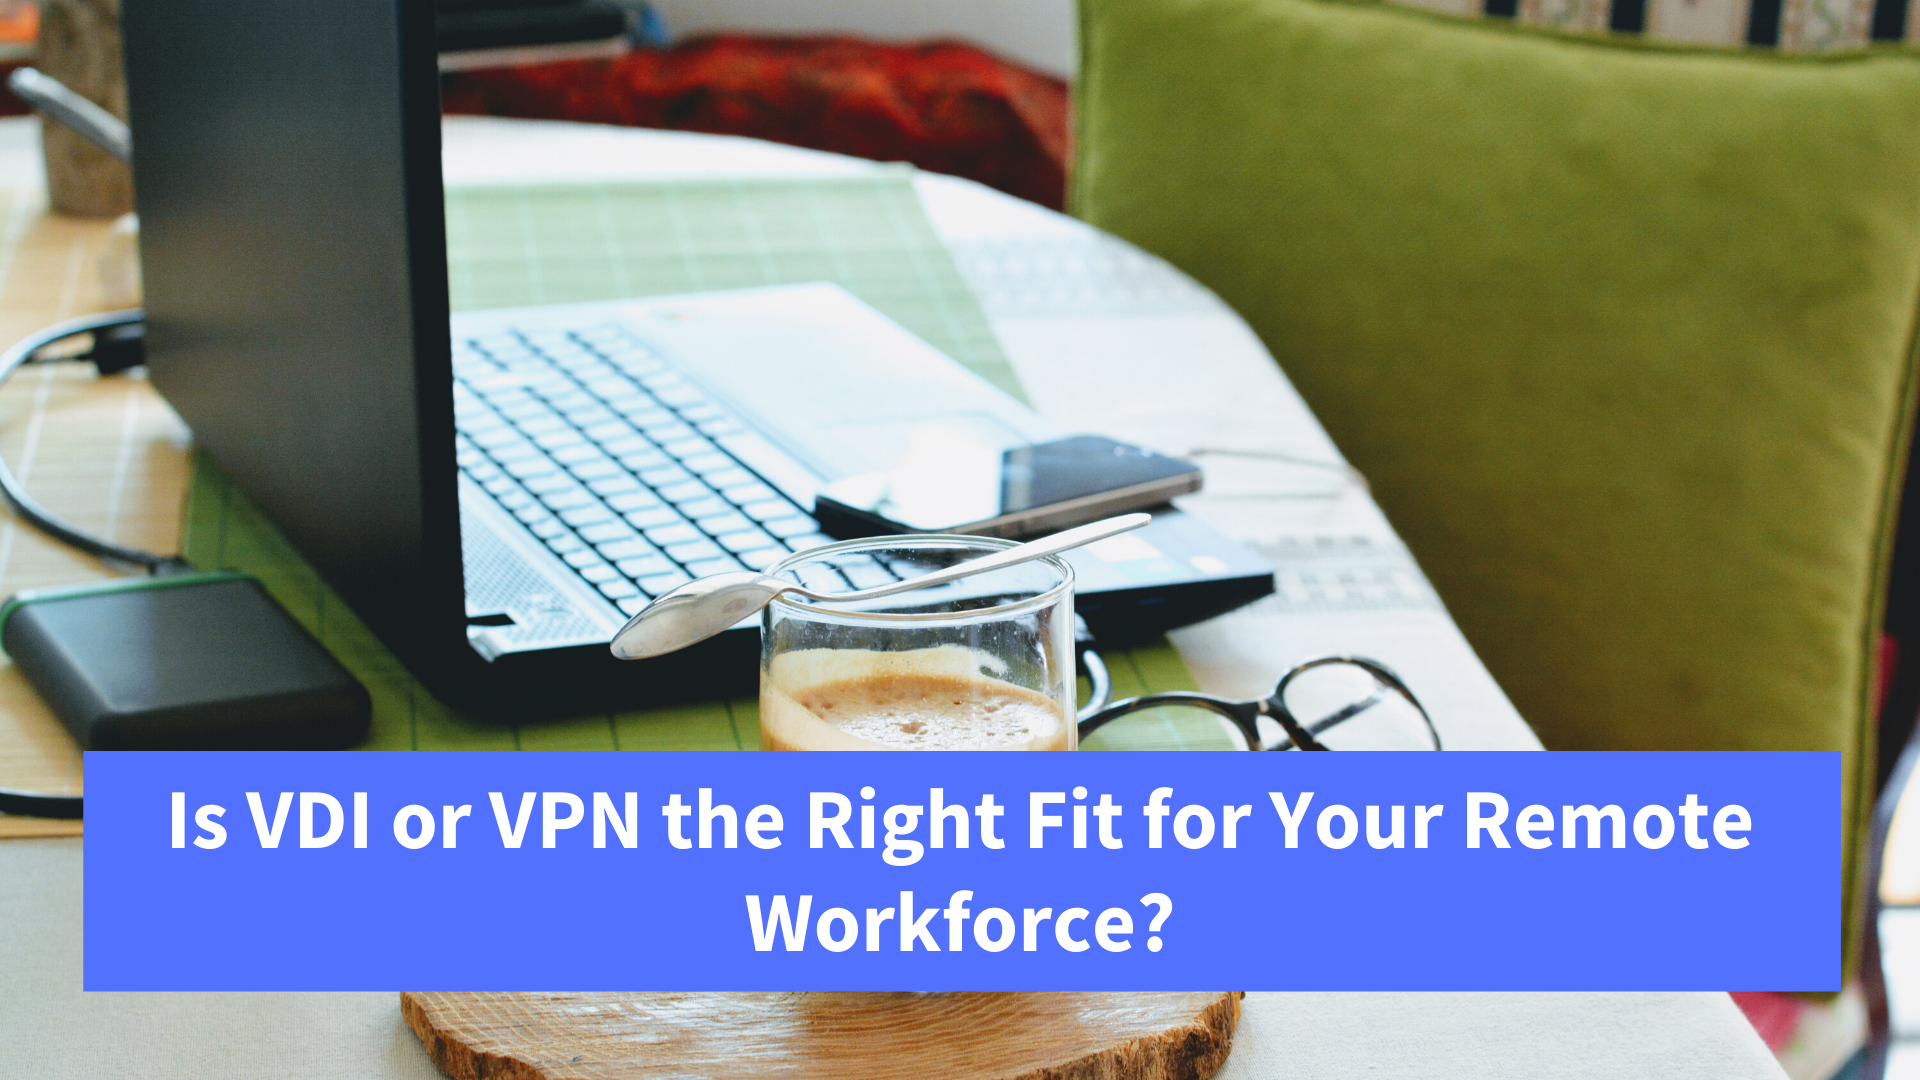 VDI or VPN?